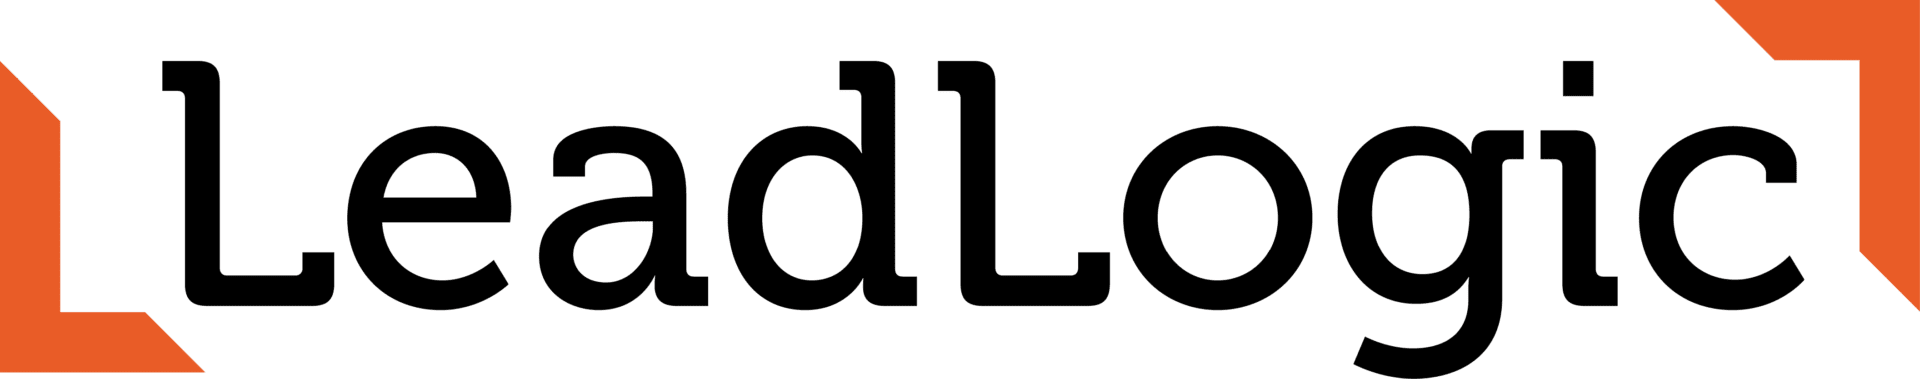 Leadlogic Logo